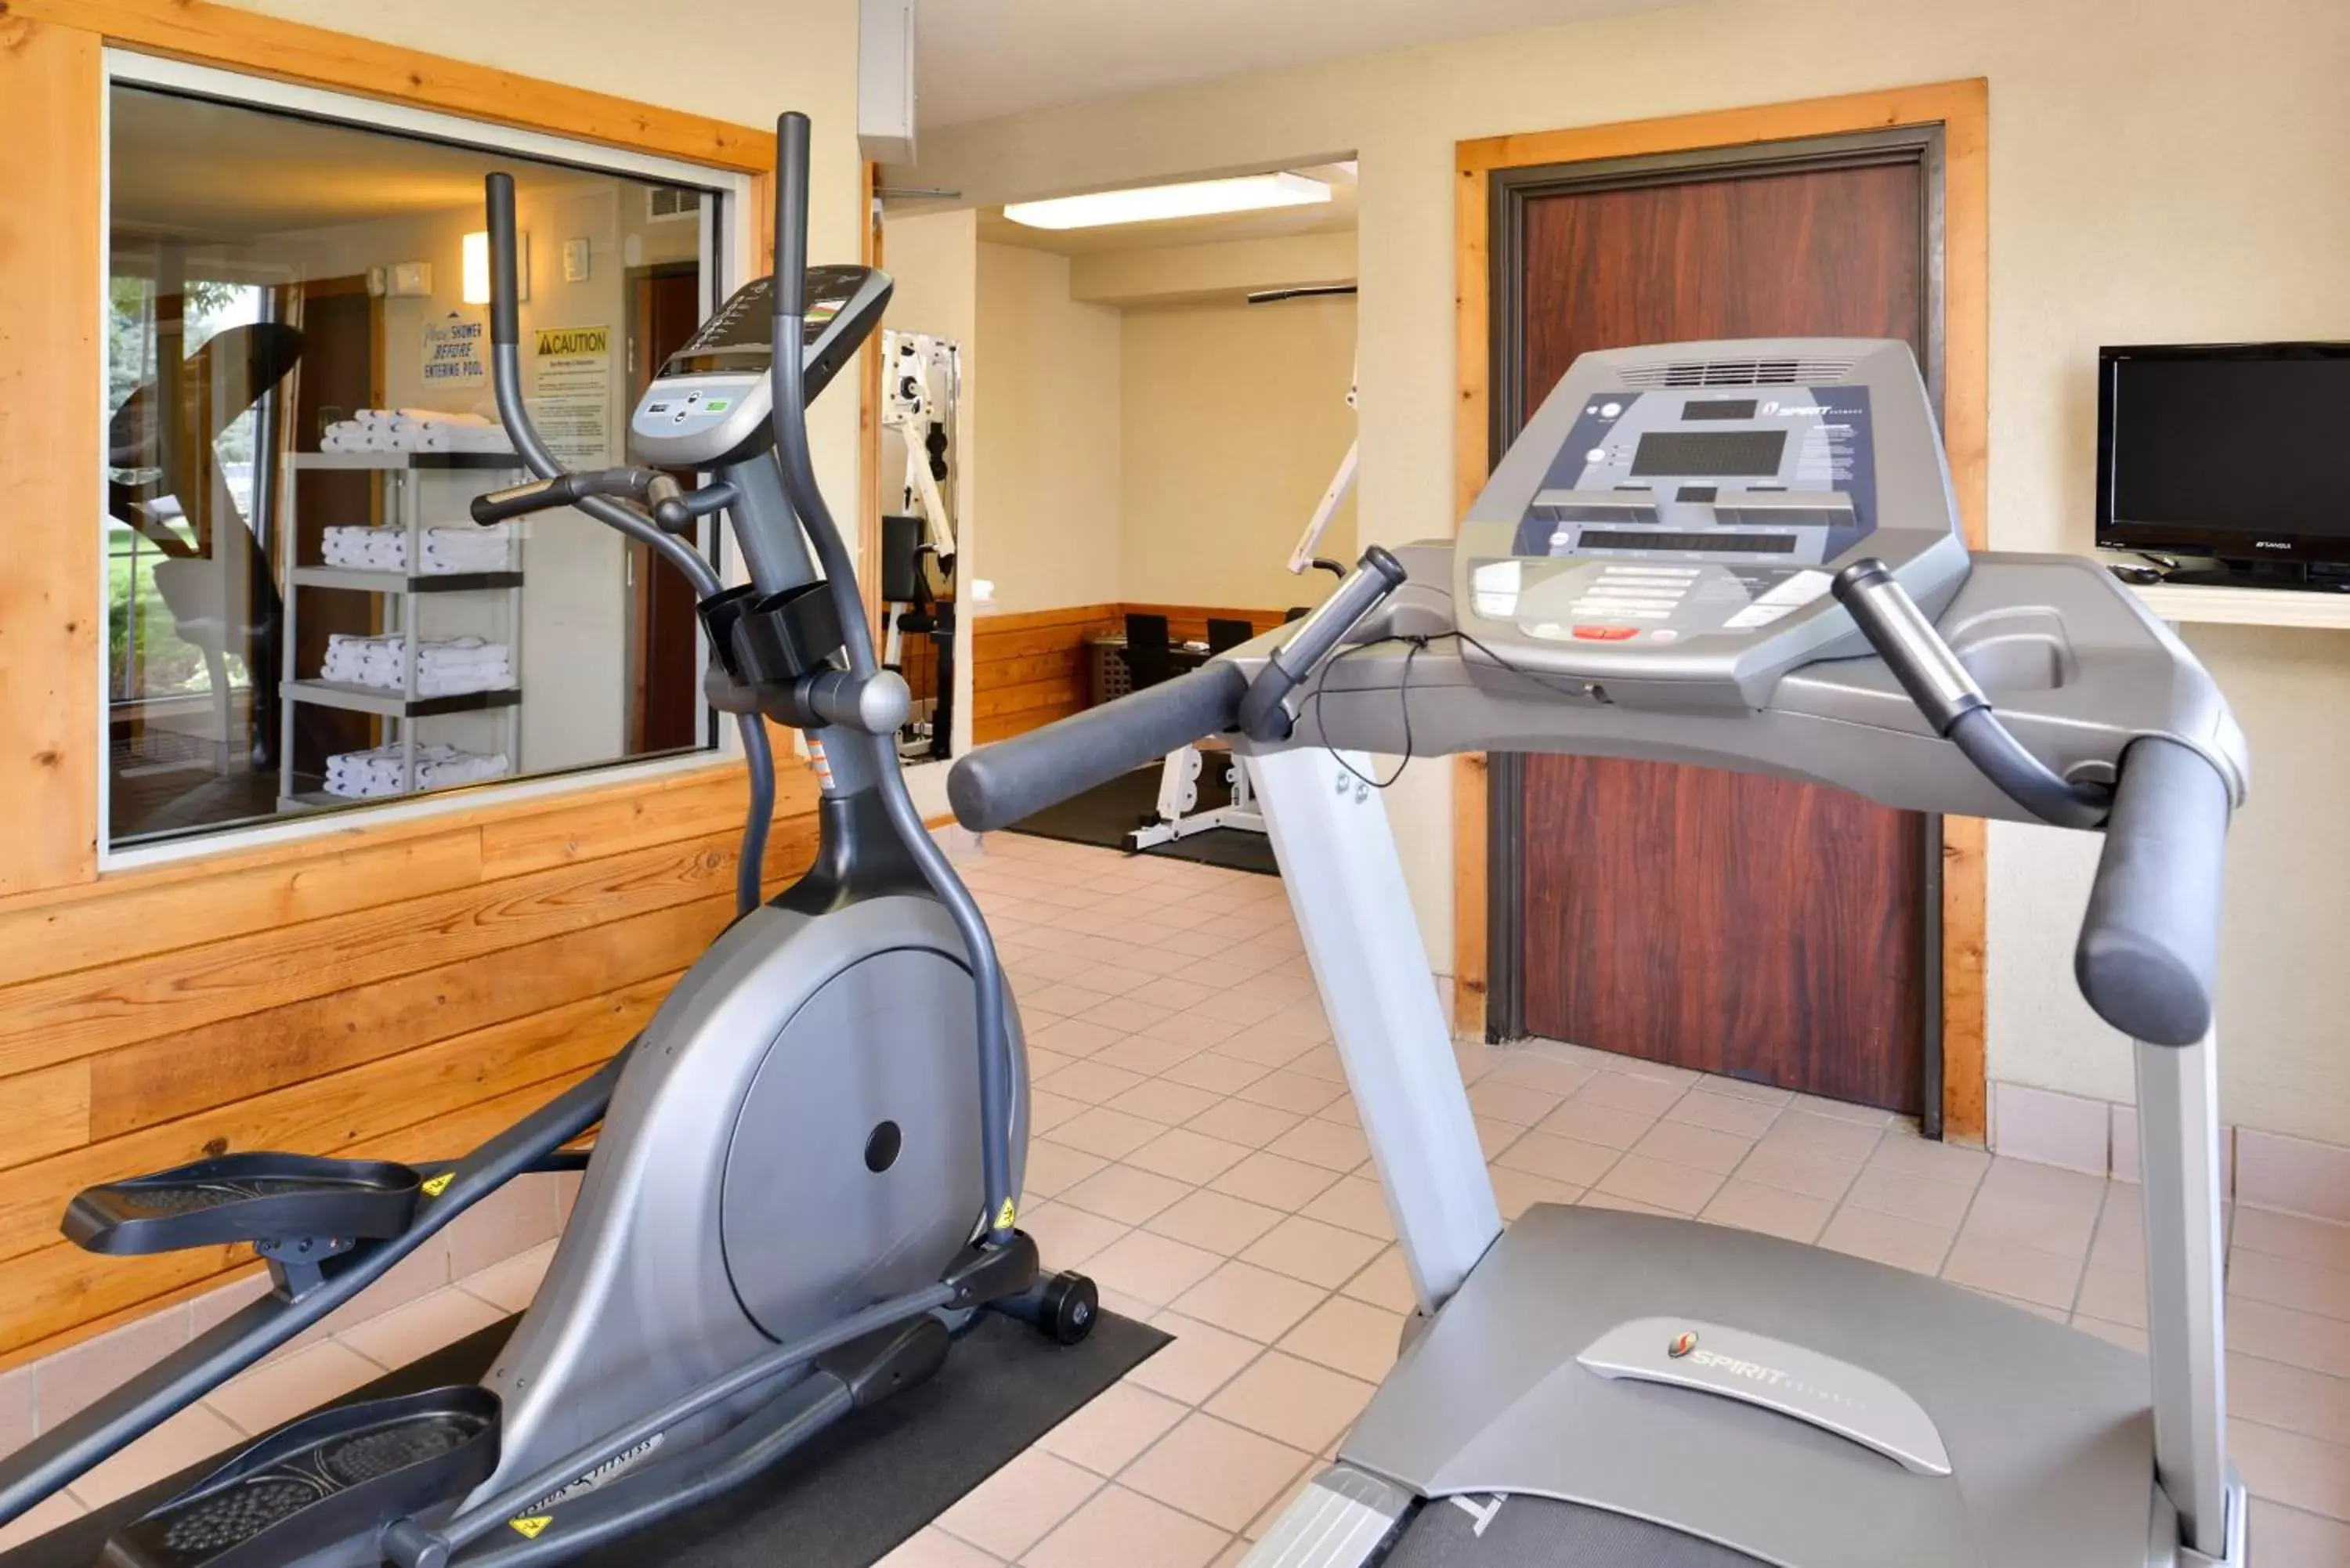 Fitness centre/facilities, Fitness Center/Facilities in Kelly Inn Billings